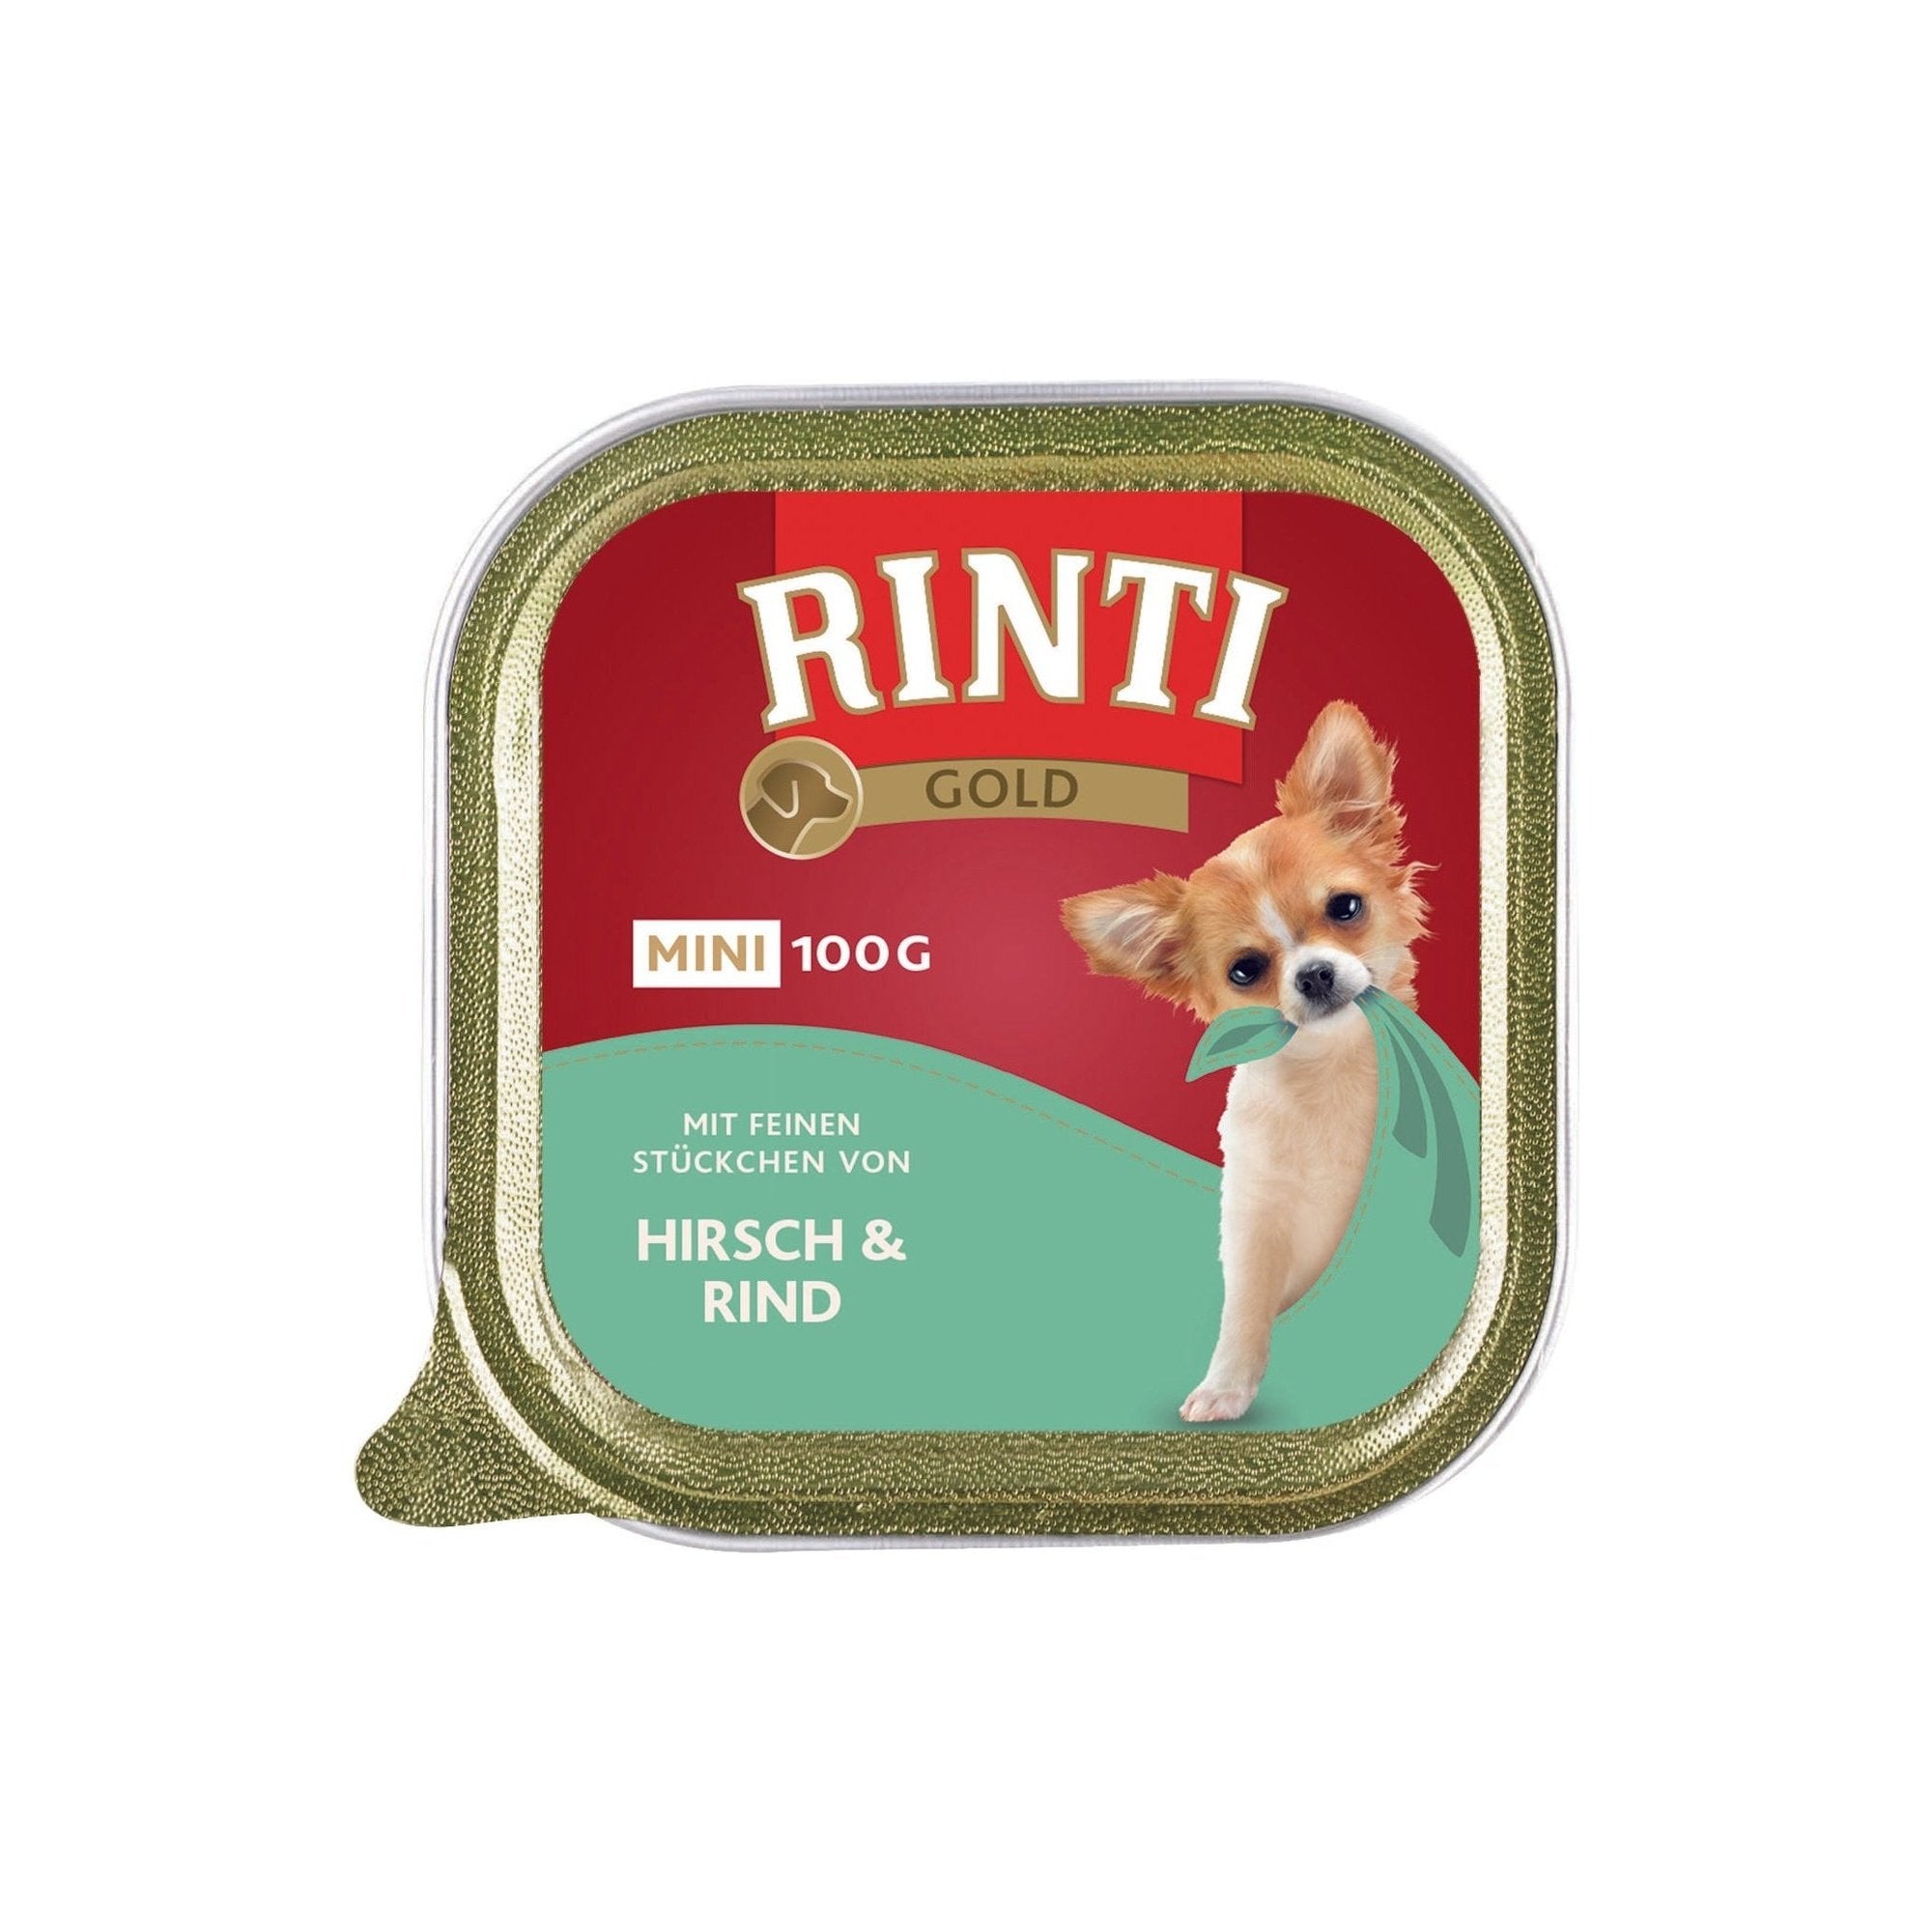 Artikel mit dem Namen Rinti Gold mini Hirsch &amp; Rind im Shop von zoo.de , dem Onlineshop für nachhaltiges Hundefutter und Katzenfutter.